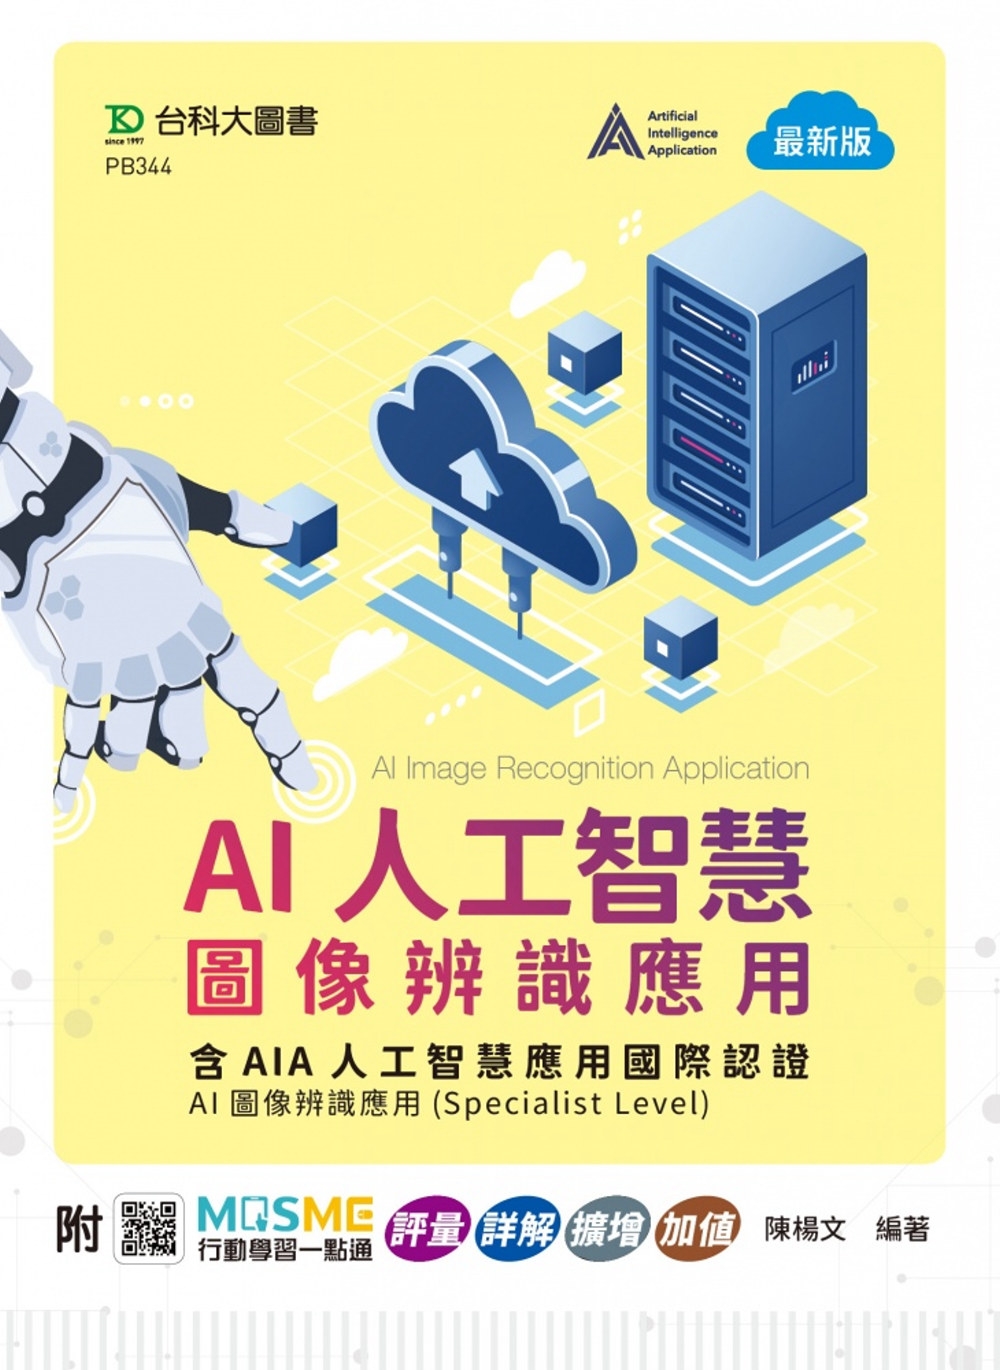 AI人工智慧圖像辨識應用含AIA人工智慧應用國際認證 - A...